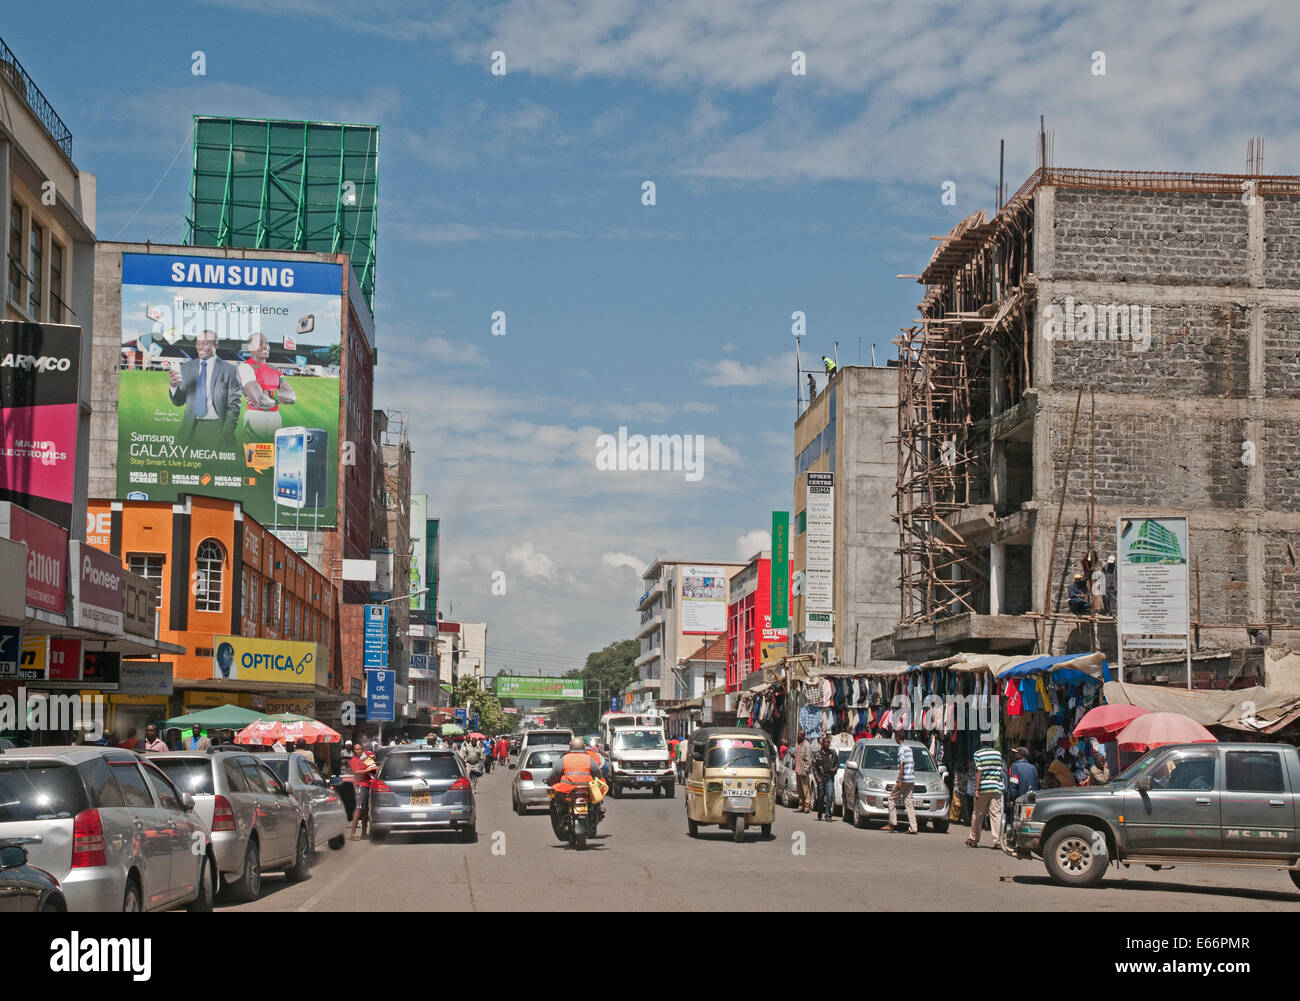 Traffico di persone e di veicoli su Kenyatta Avenue Nakuru Kenya Africa orientale con i pannelli pubblicitari negozi e Piaggio Ape a tre ruote taxi Foto Stock